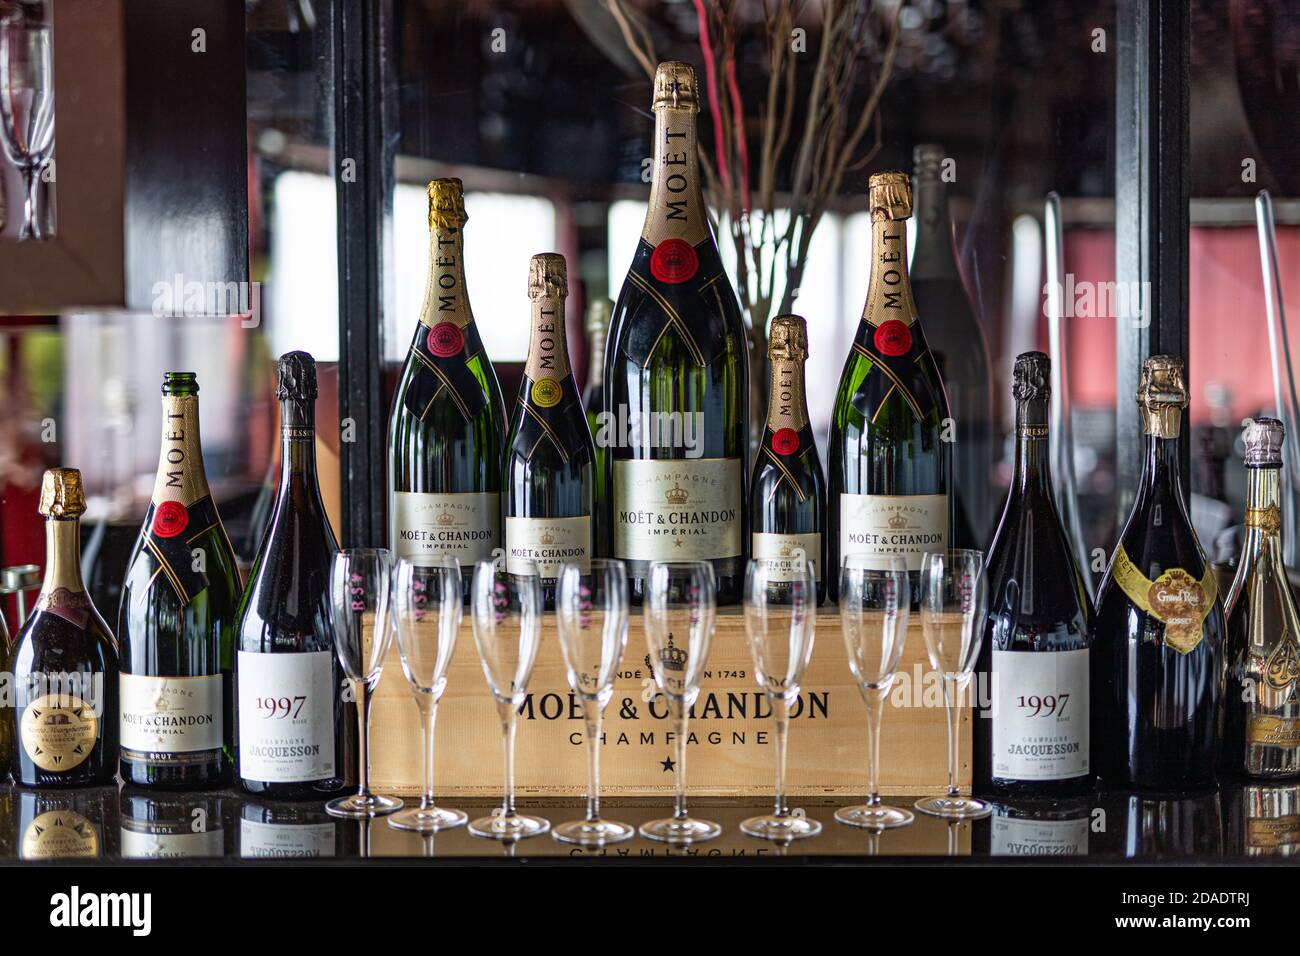 07.10.19, Homme, Maldives : Premium, boissons de luxe, alcool.  Porte-bouteille de champagne 'moet chandon' . Une fête splendide. Société  supérieure Photo Stock - Alamy